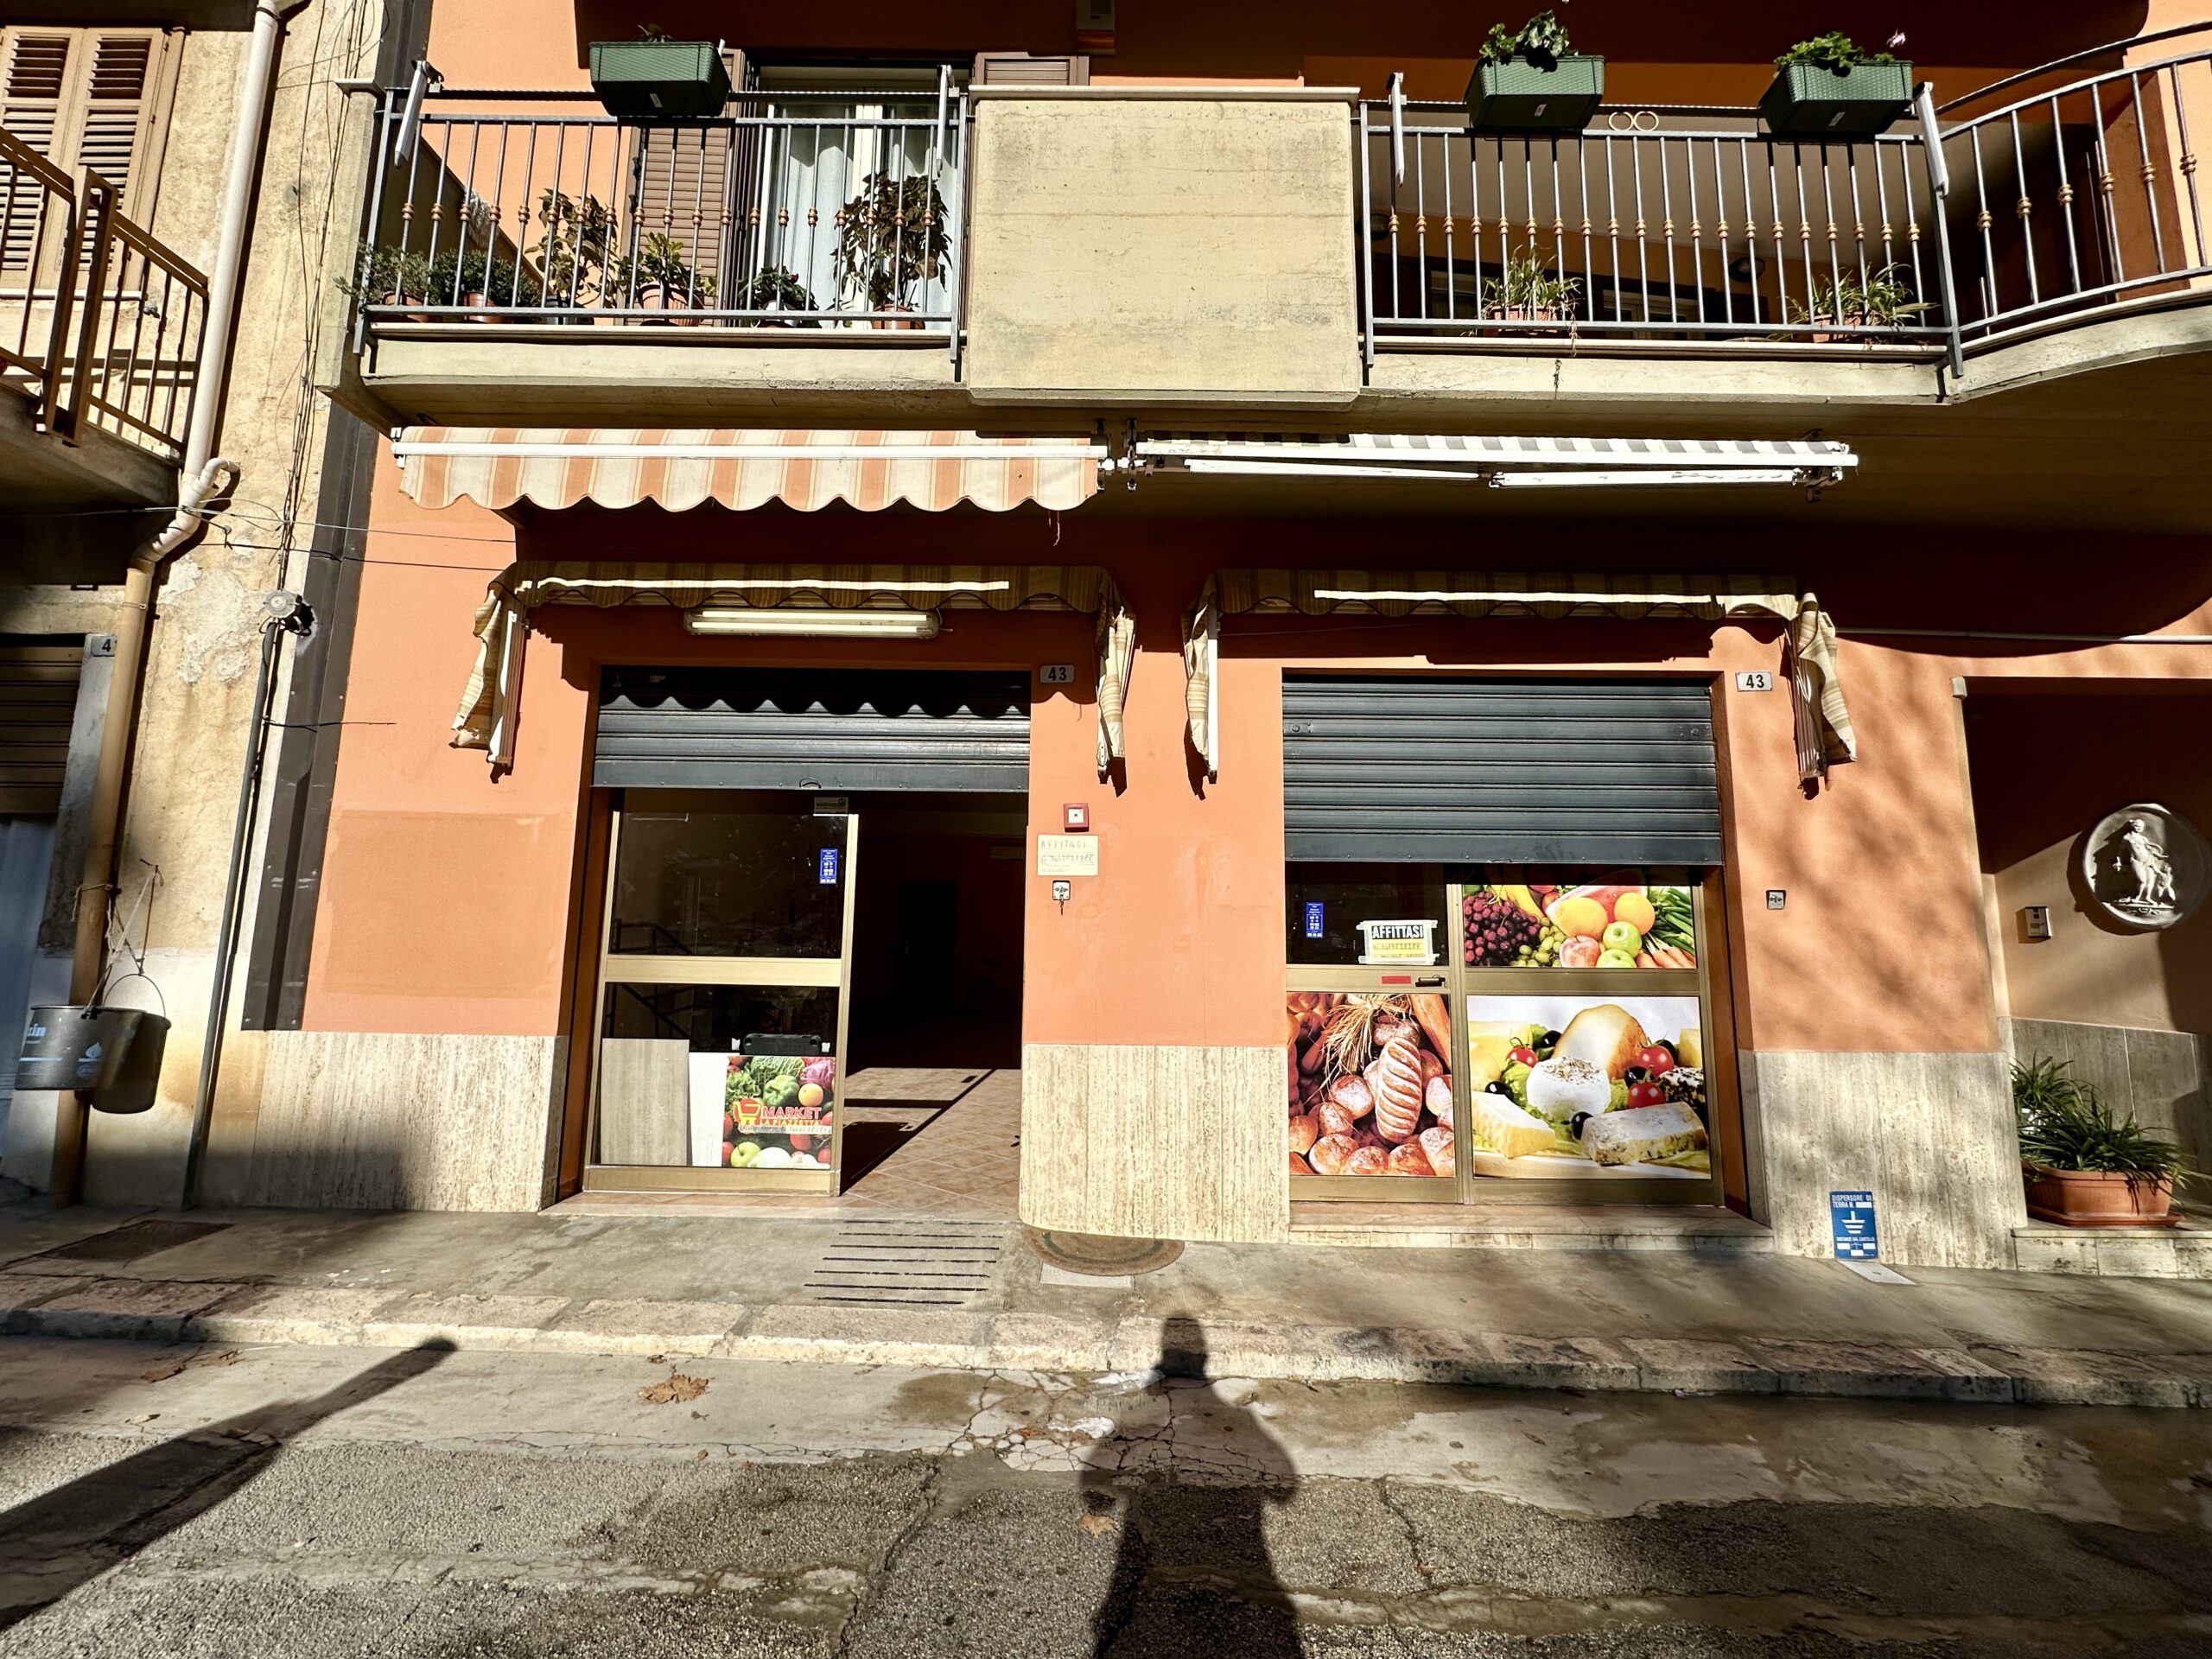 Locale commerciale in affitto a Partinico, Via Catalano